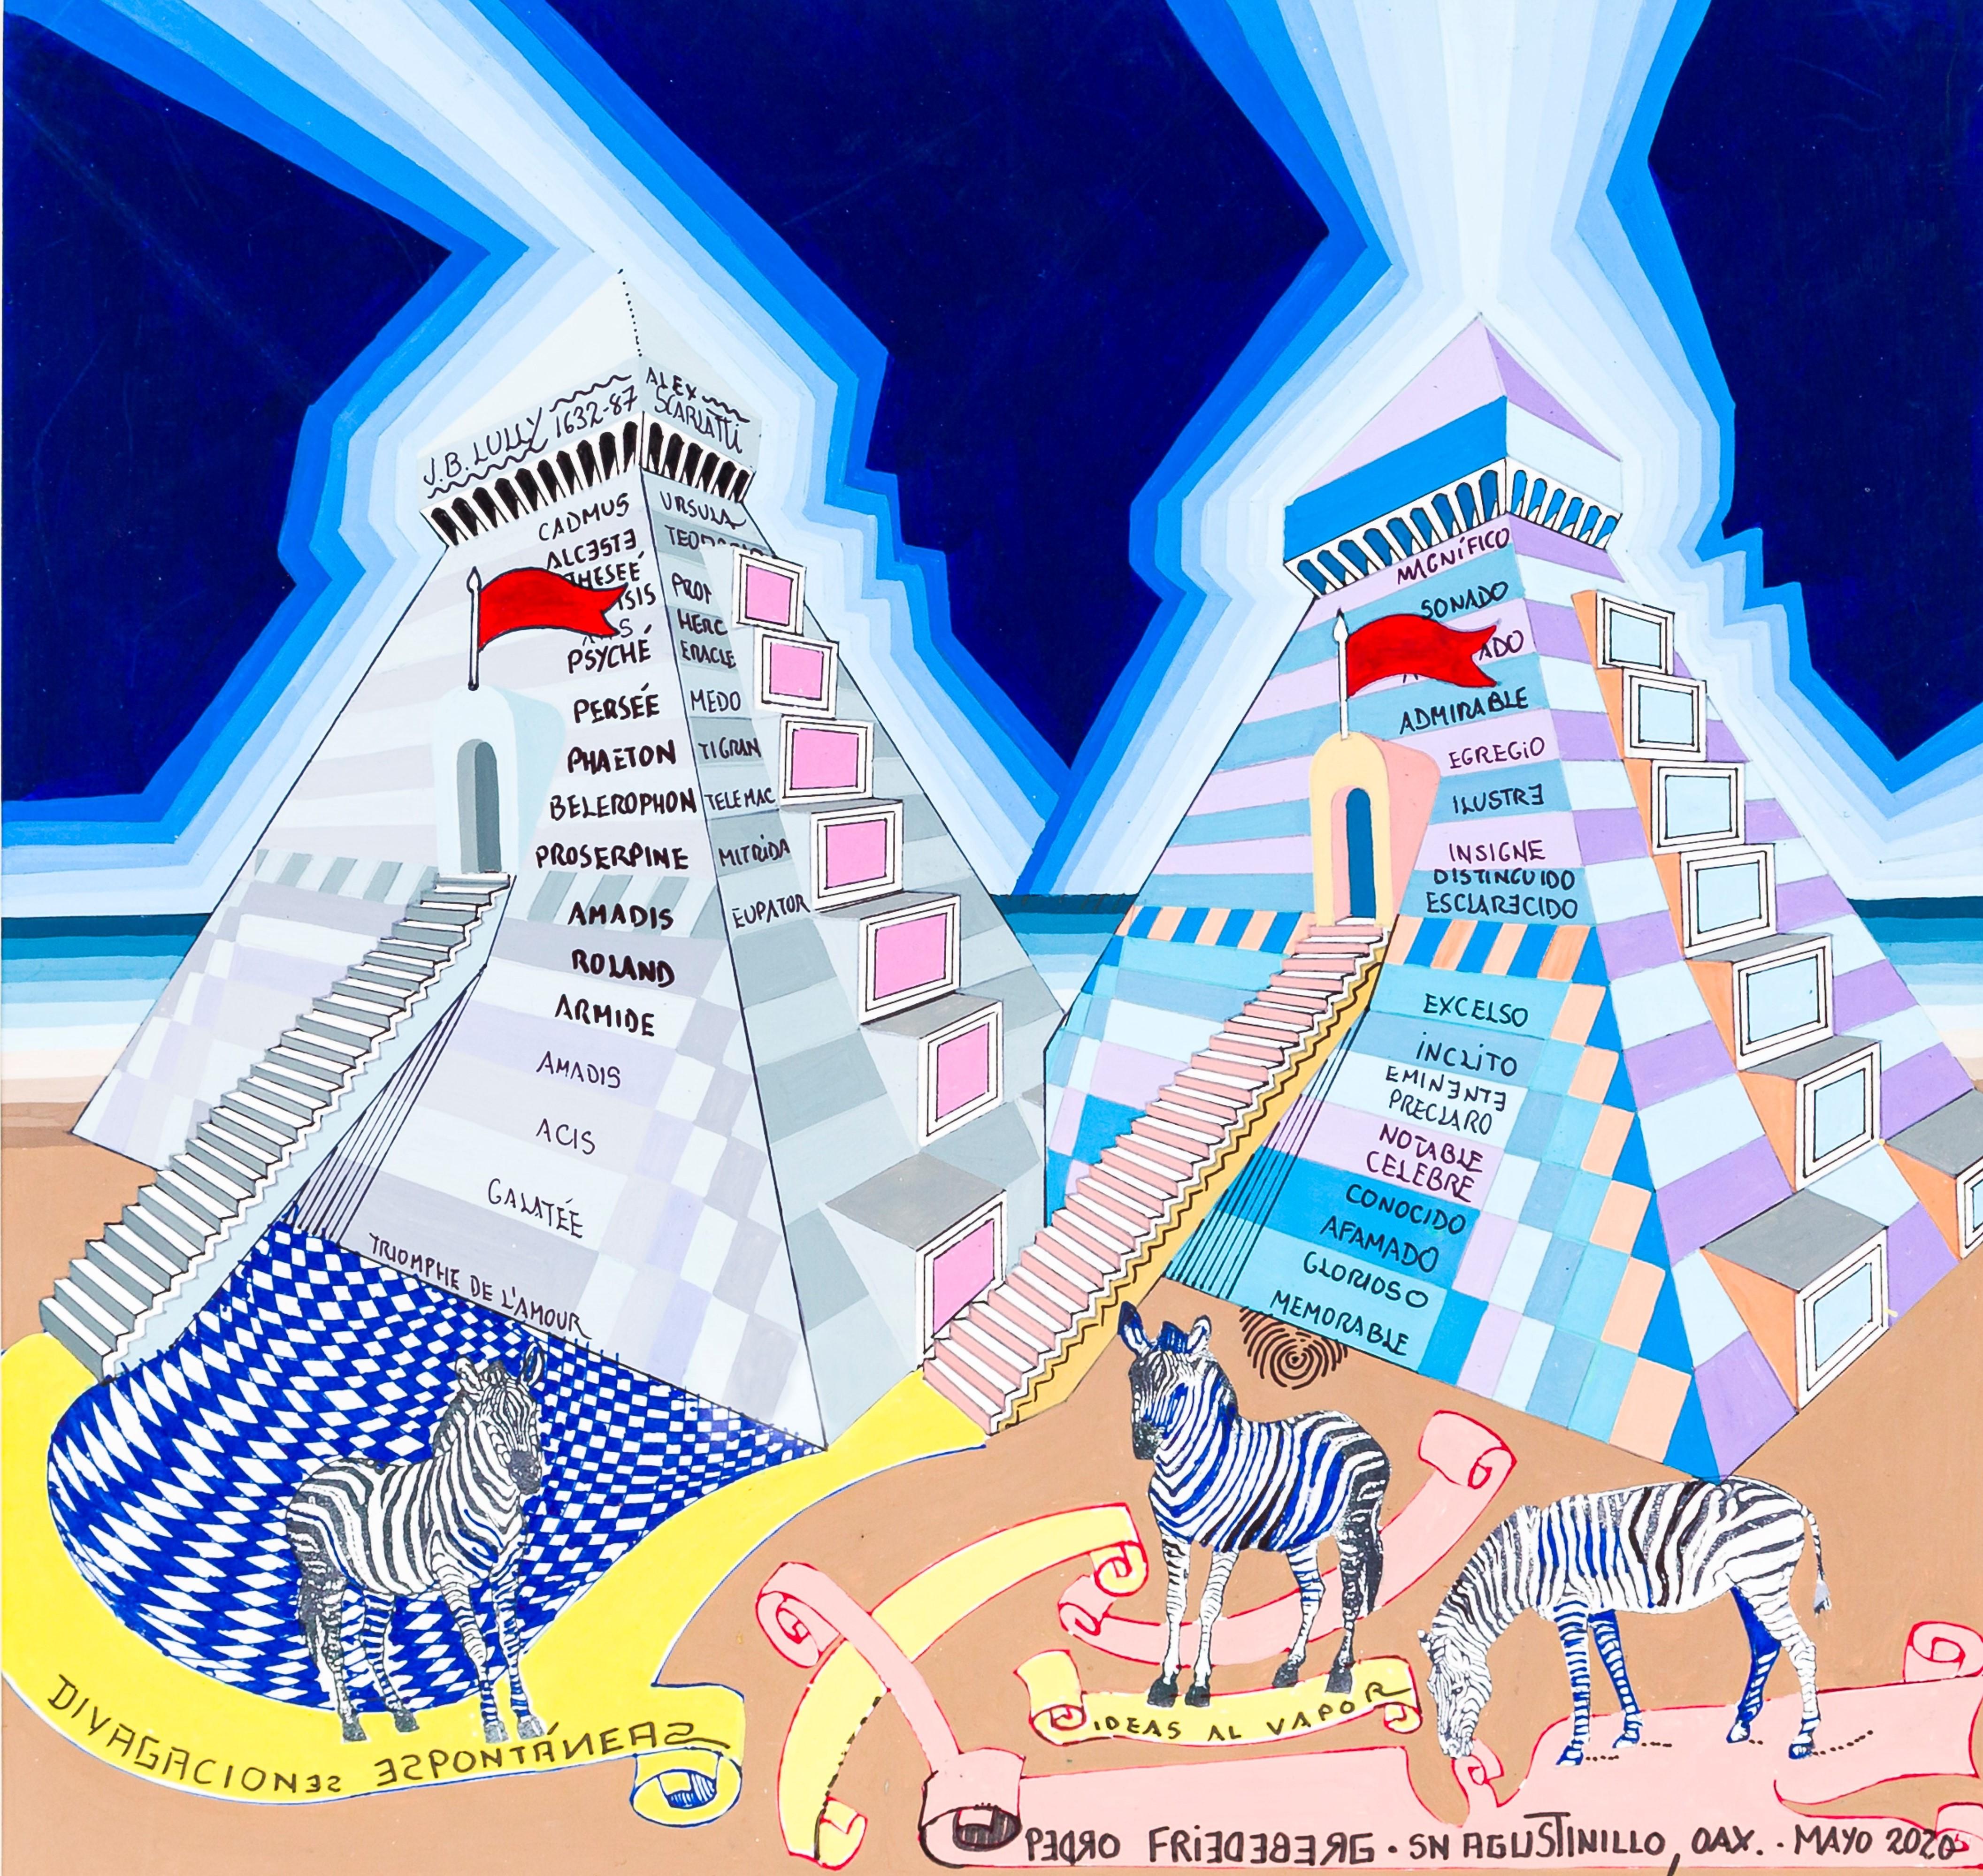 Pedro Friedeberg Figurative Print - "Divagaciones espontáneas" Zebras and mexican pyramids surrealist print